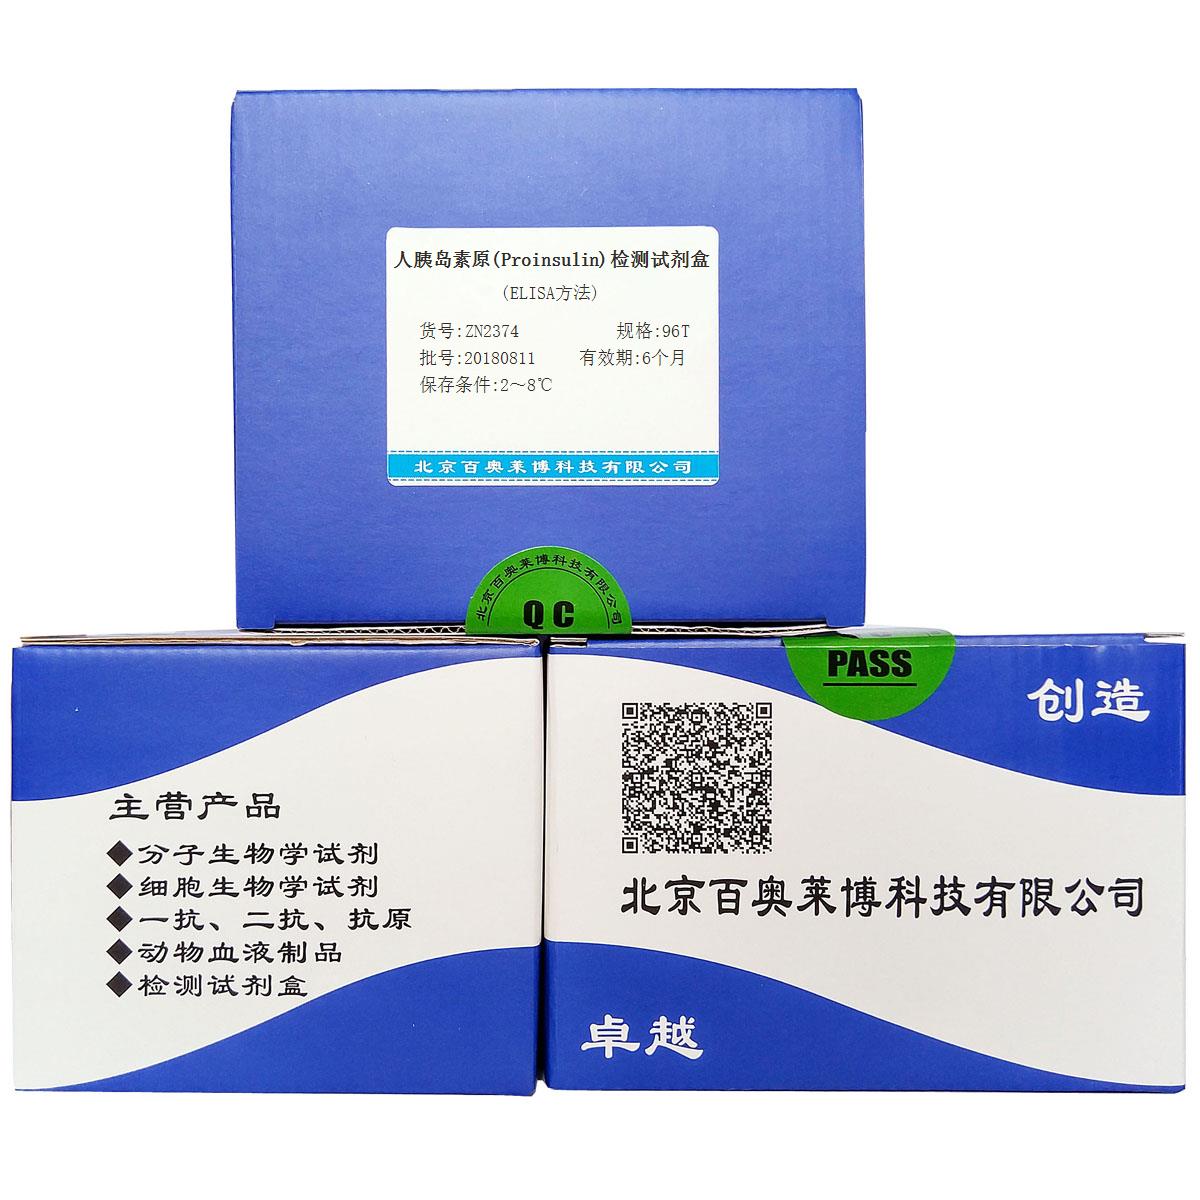 人胰岛素原(Proinsulin)检测试剂盒(ELISA方法)